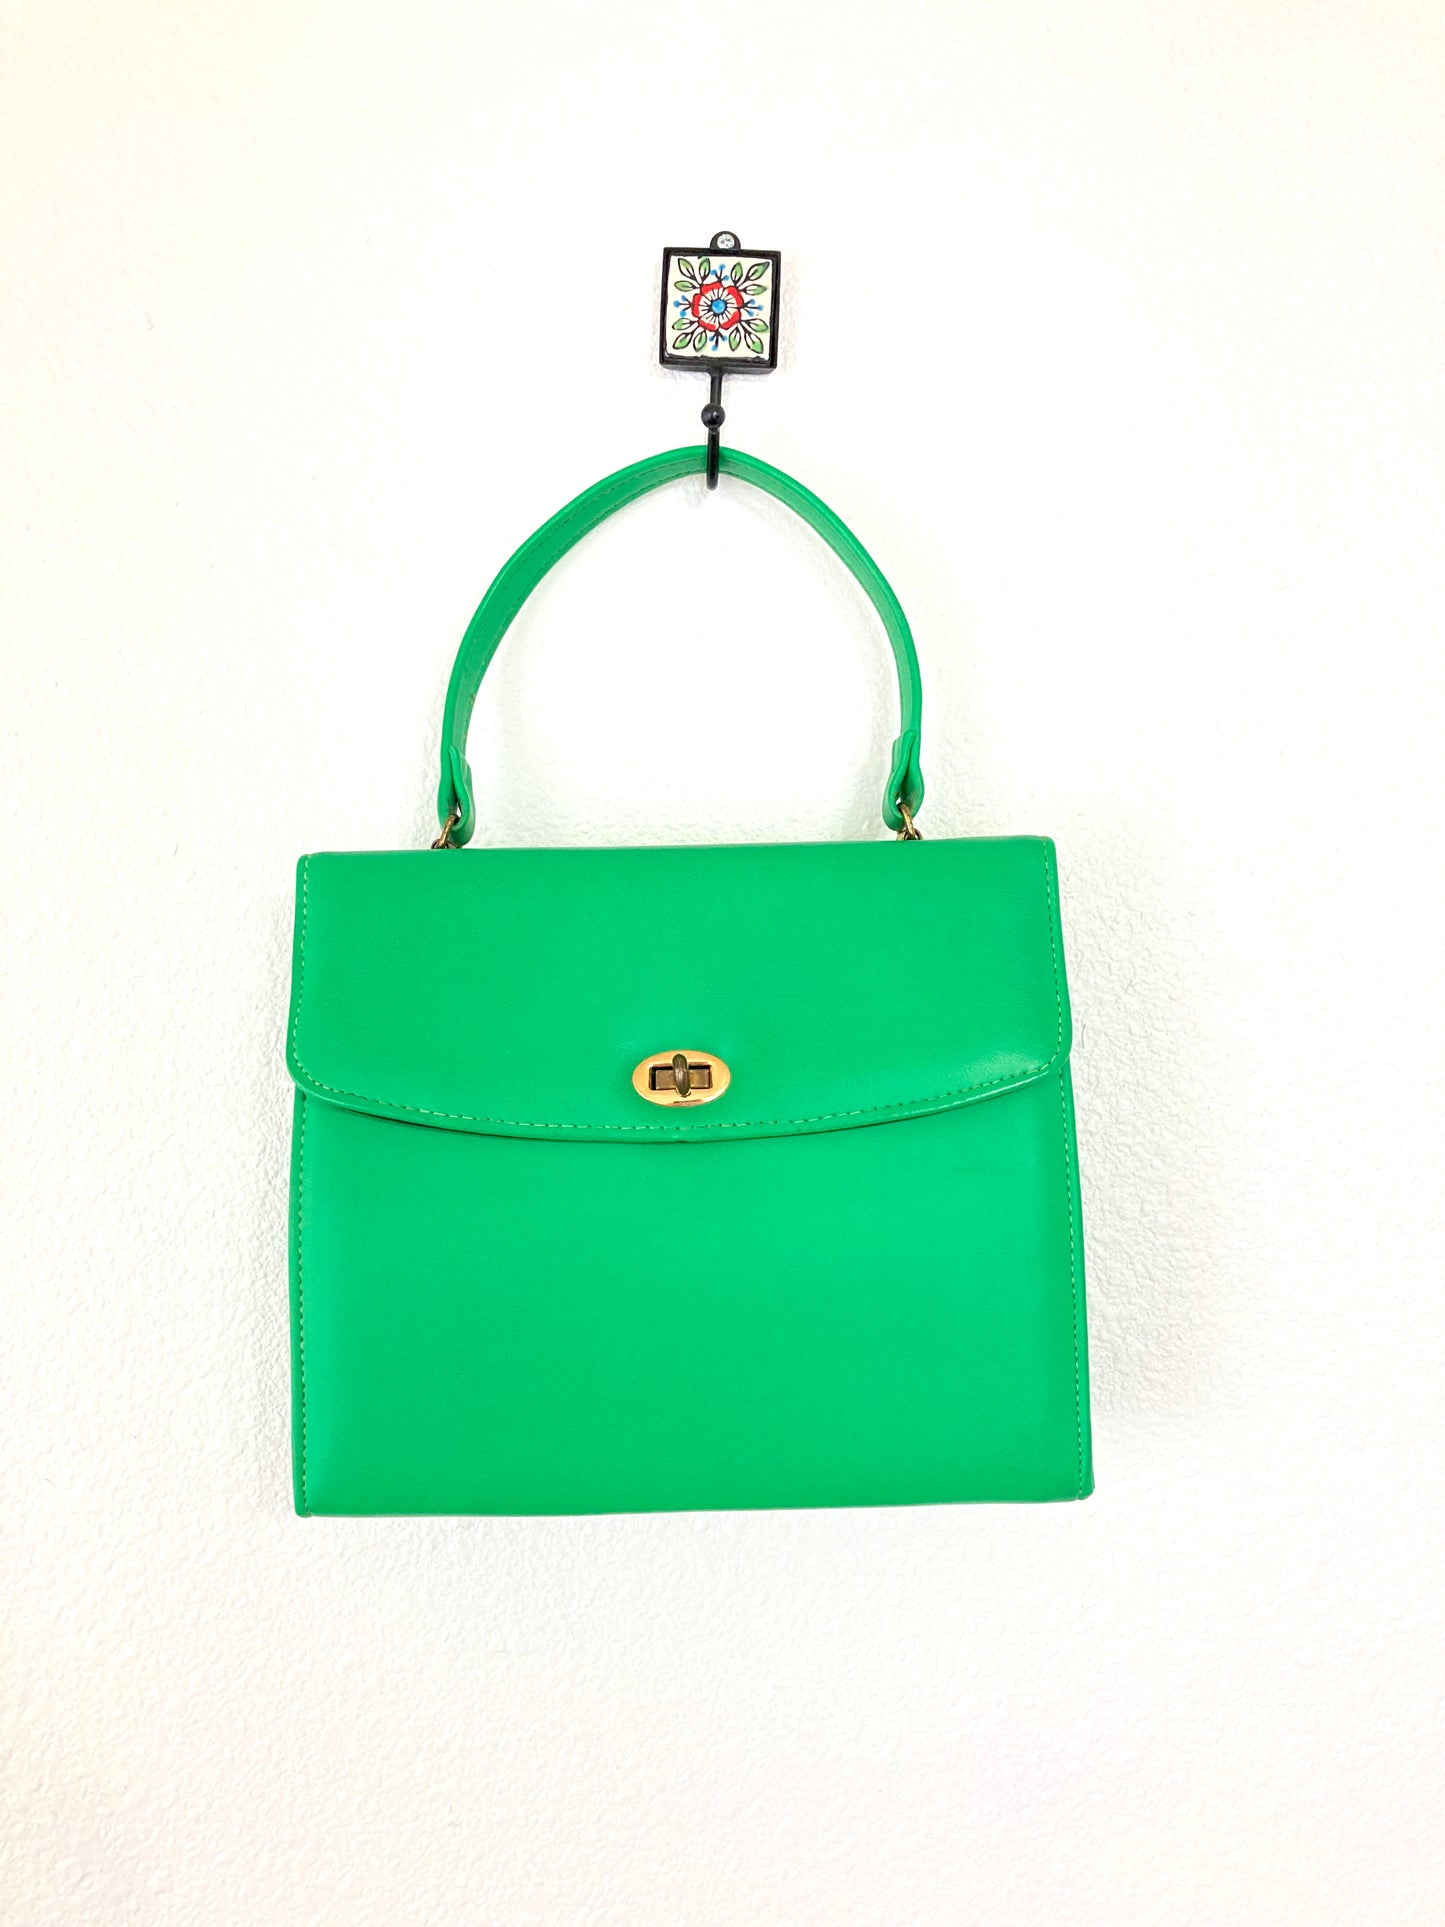 1950s Bright Green Handbag